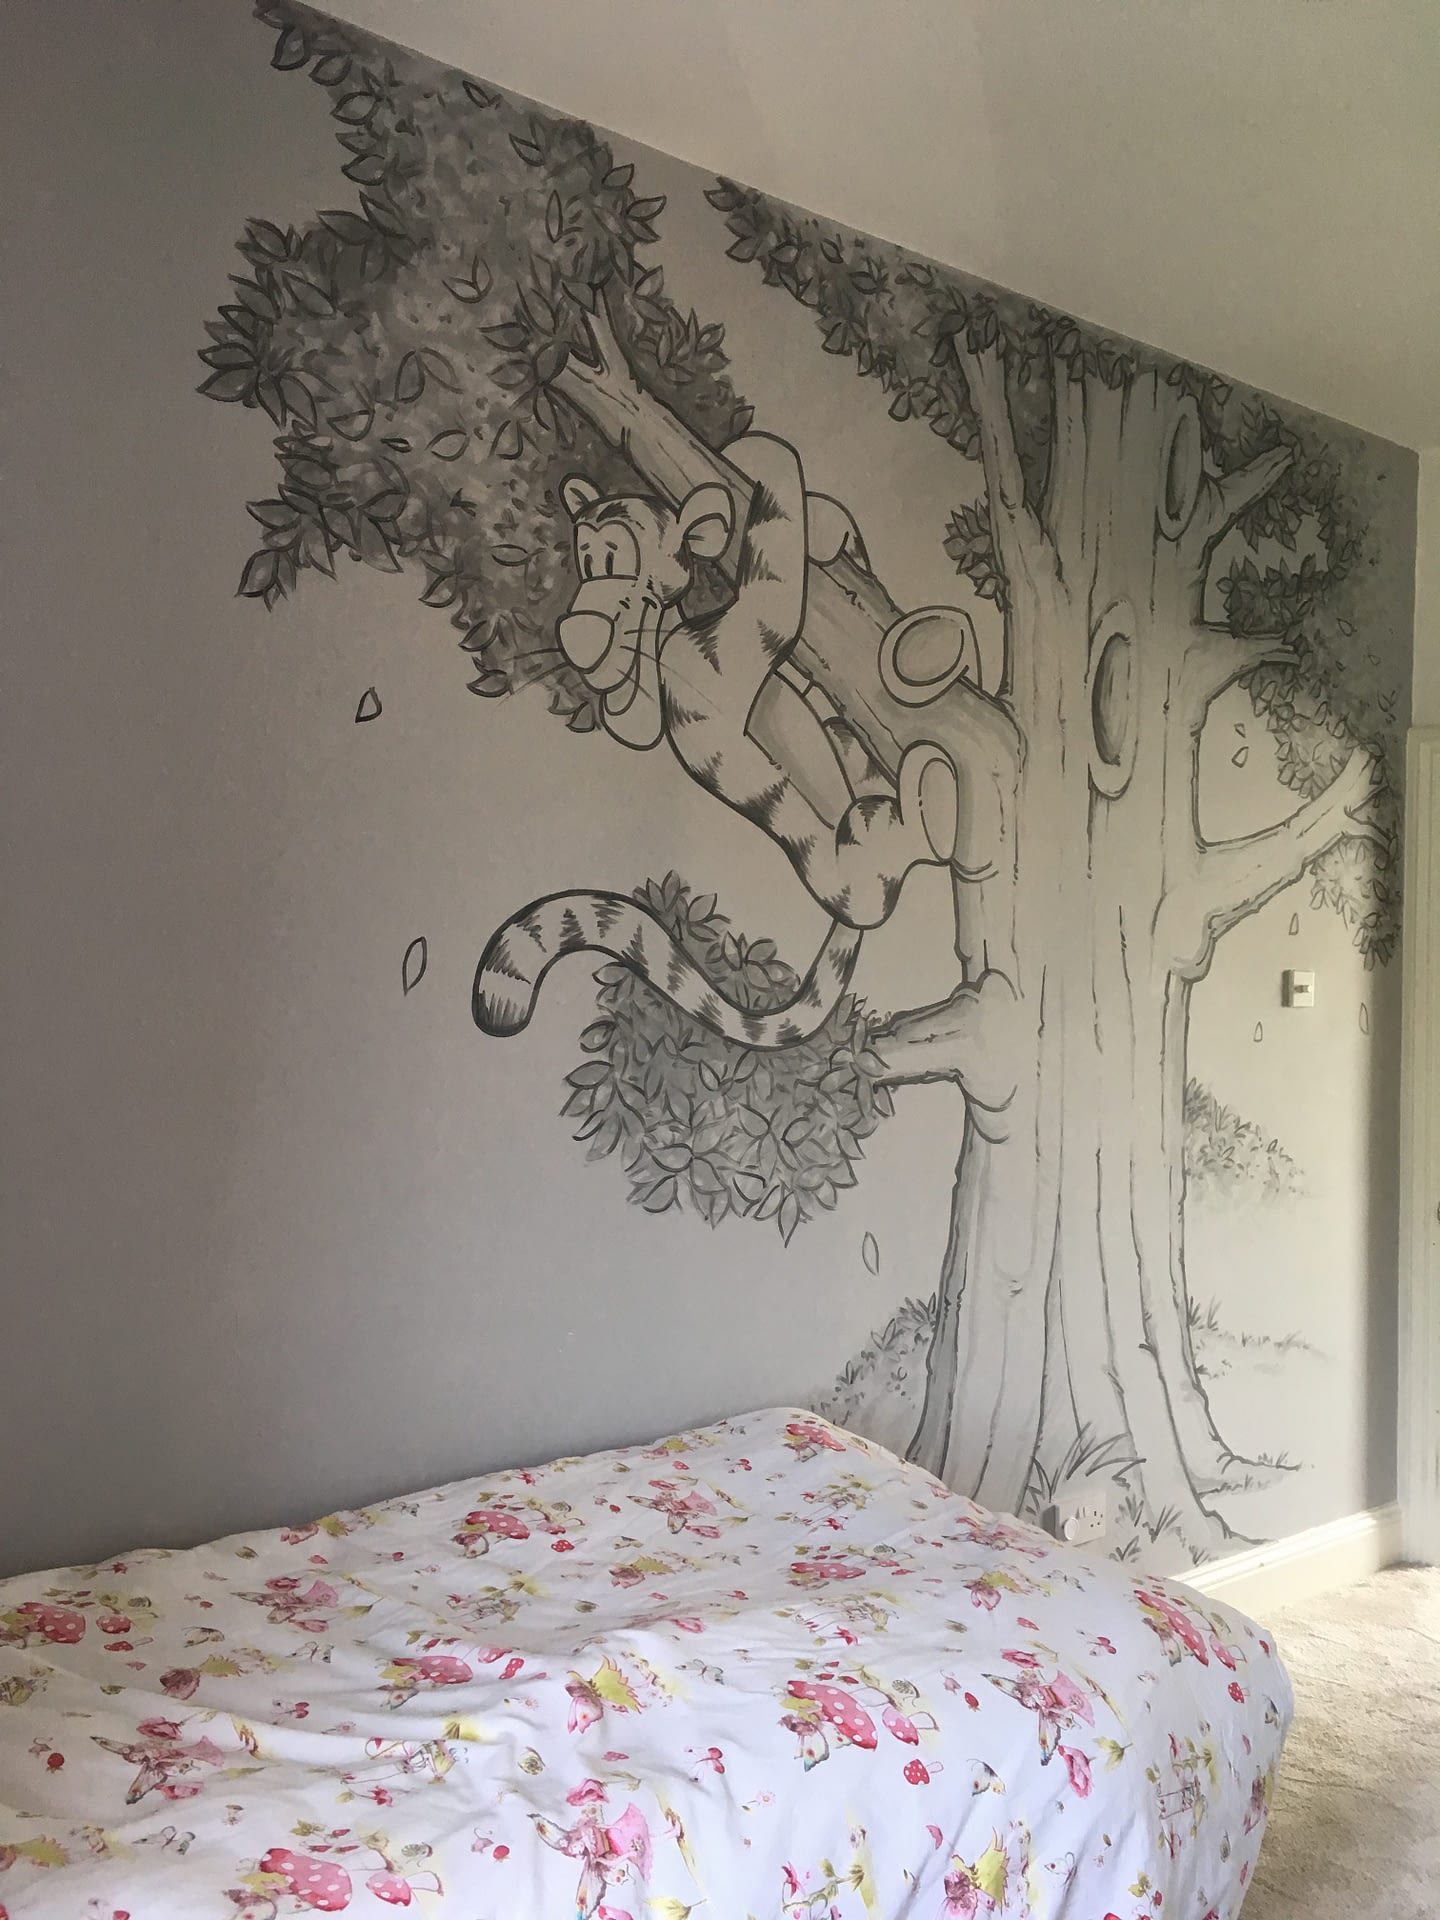 Tigger in Tree Mural 